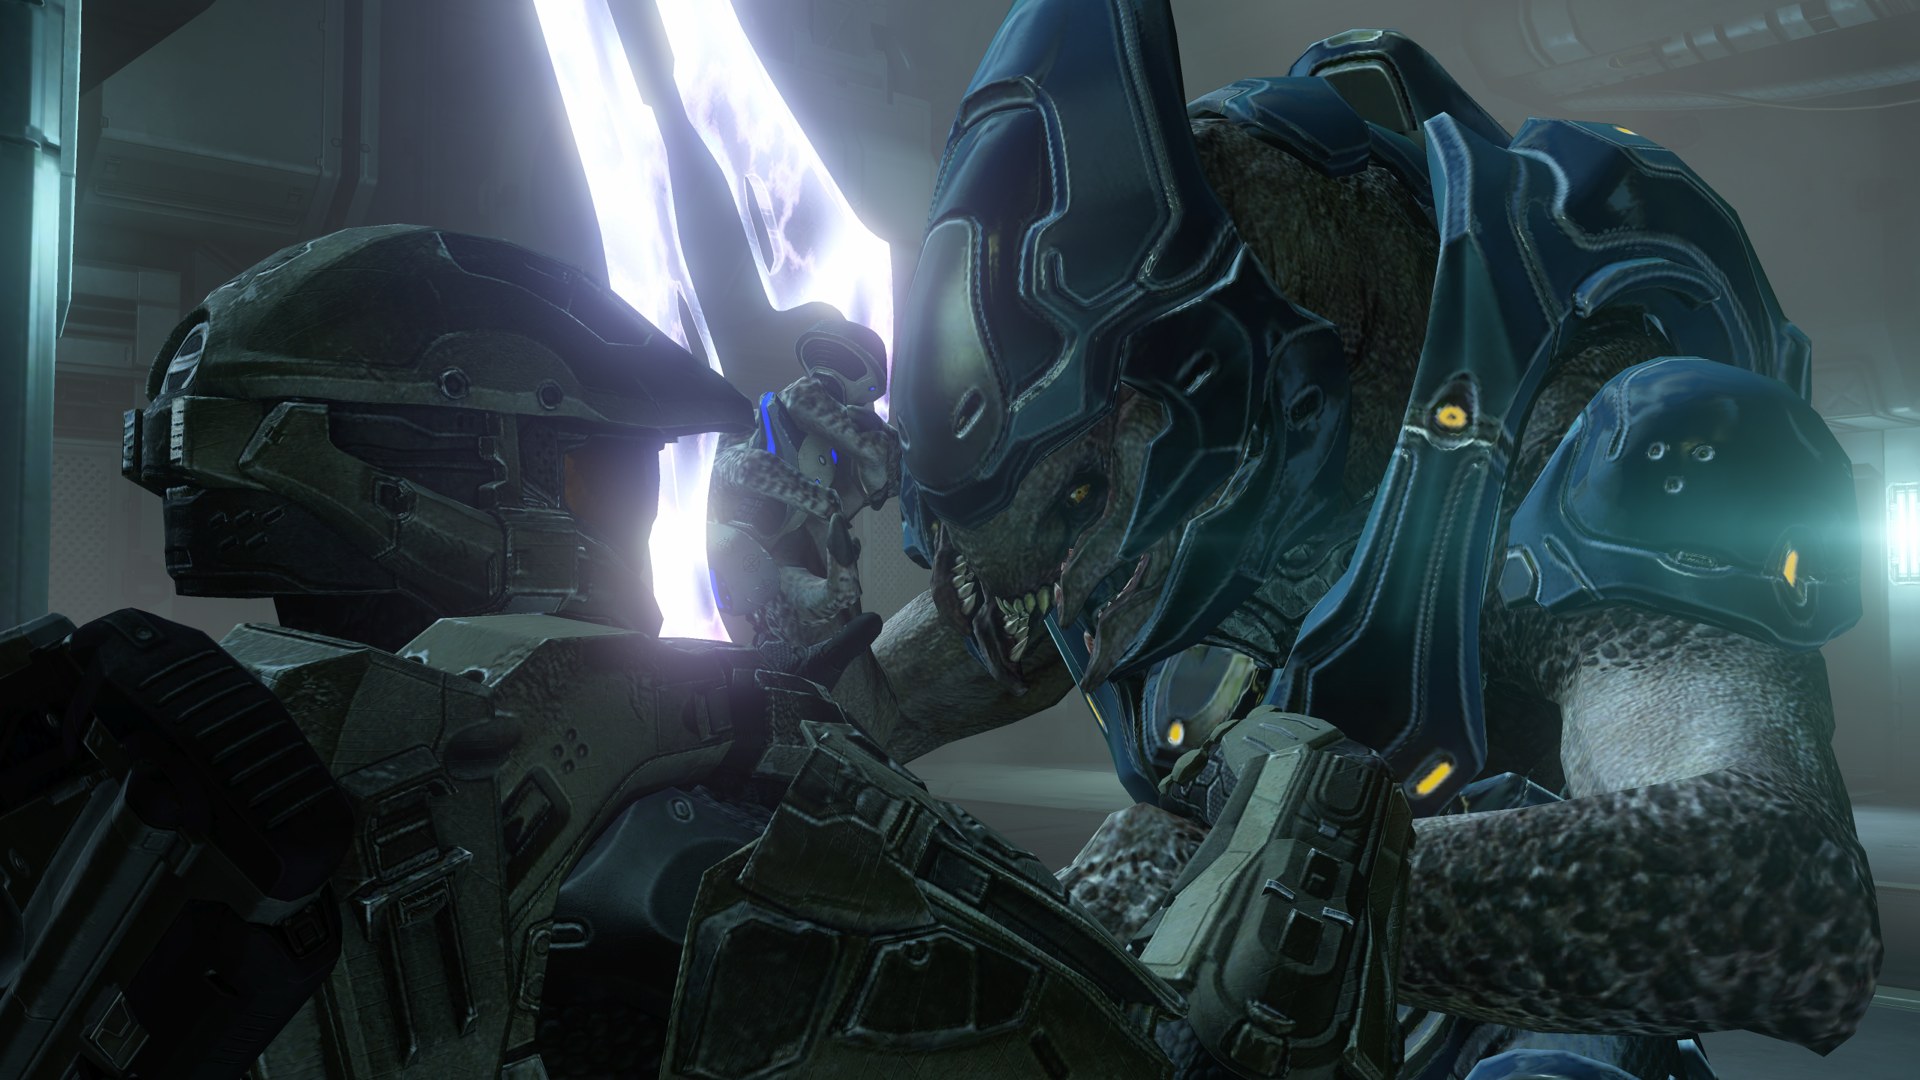 Скачать картинку Halo 4, Гало, Видеоигры в телефон бесплатно.